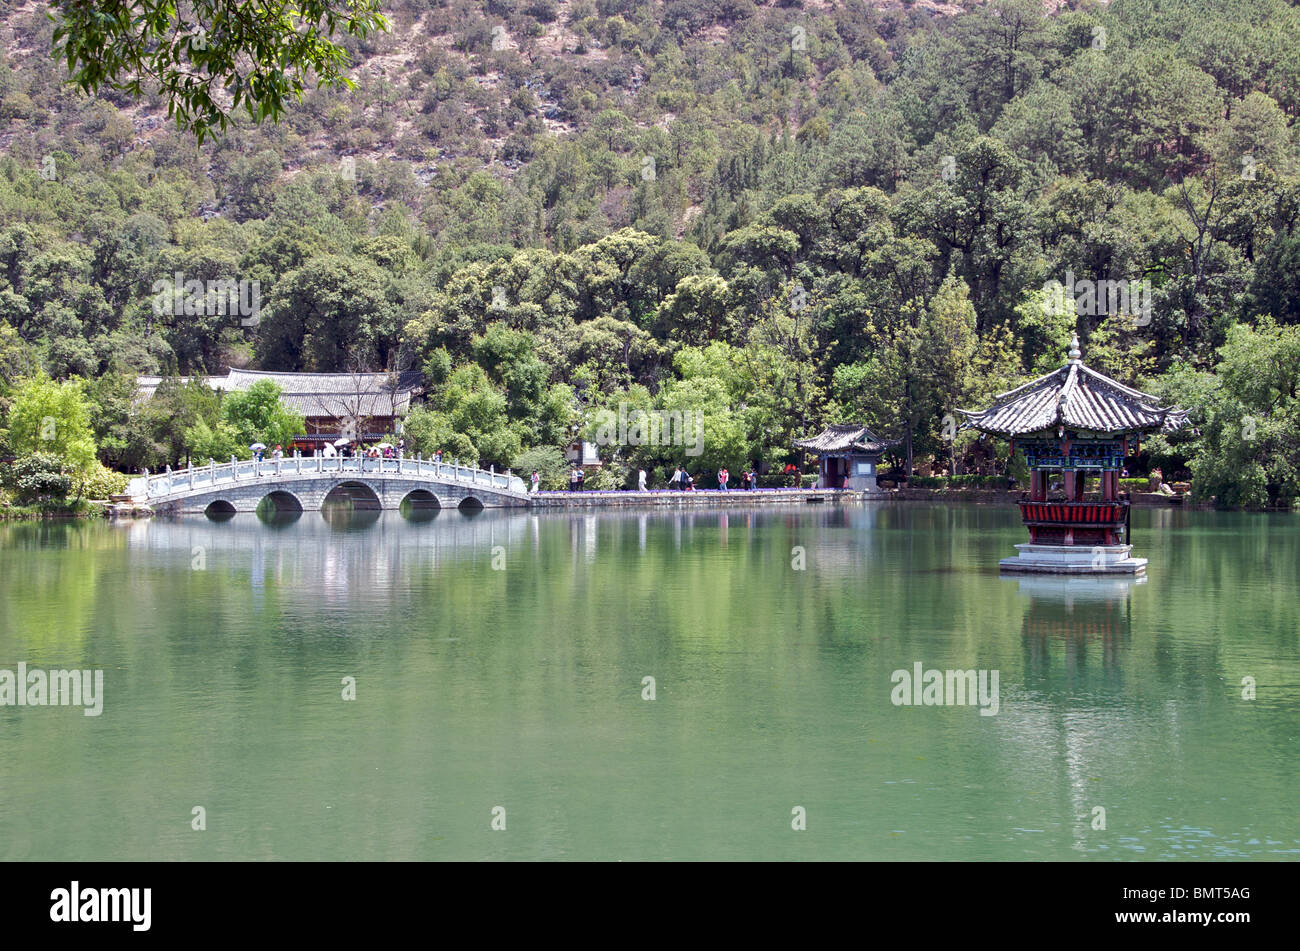 Bridge and gazebo in lake Black Dragon Pool Park Lijiang Yunnan China Stock Photo